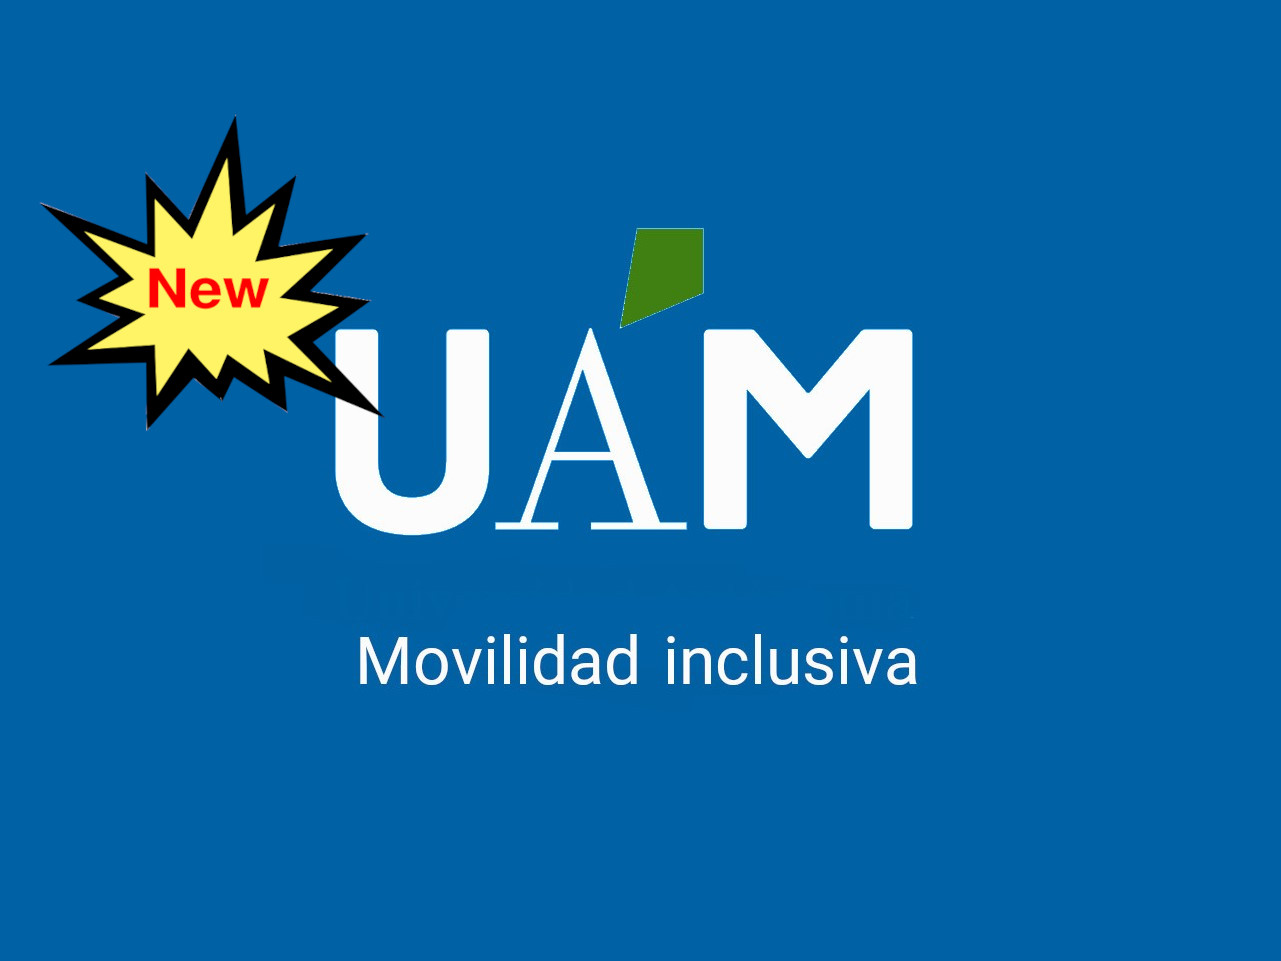 Nuevo, movilidad inclusiva logo